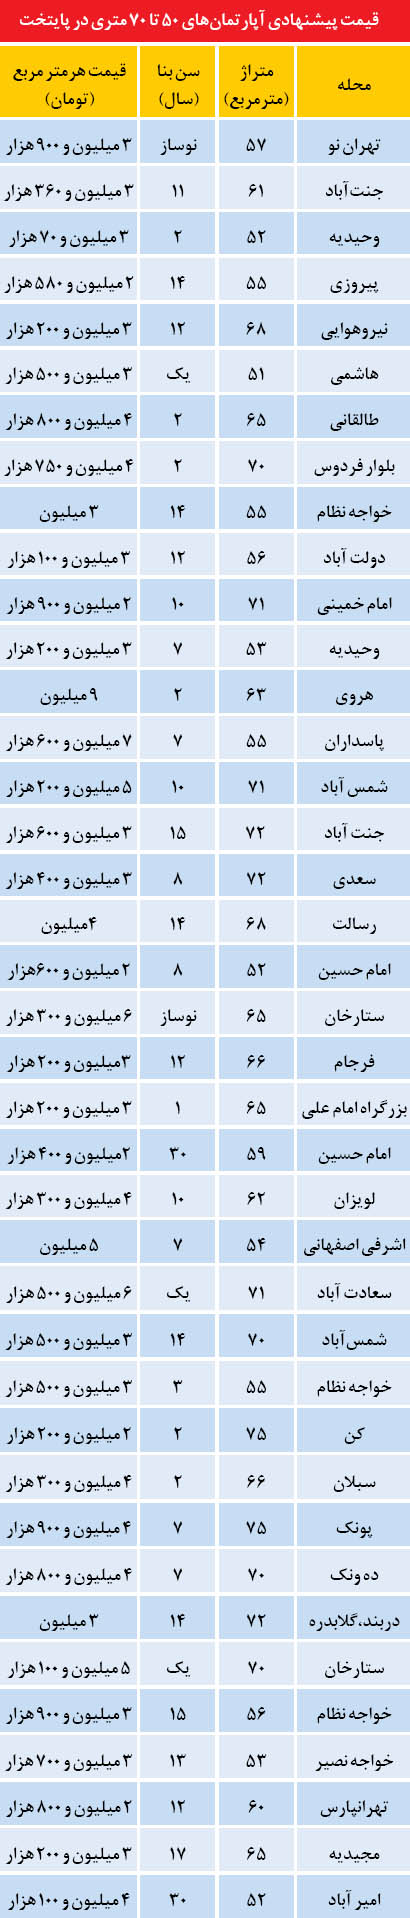 قیمت آپارتمان های 50 تا 70 متری در تهران